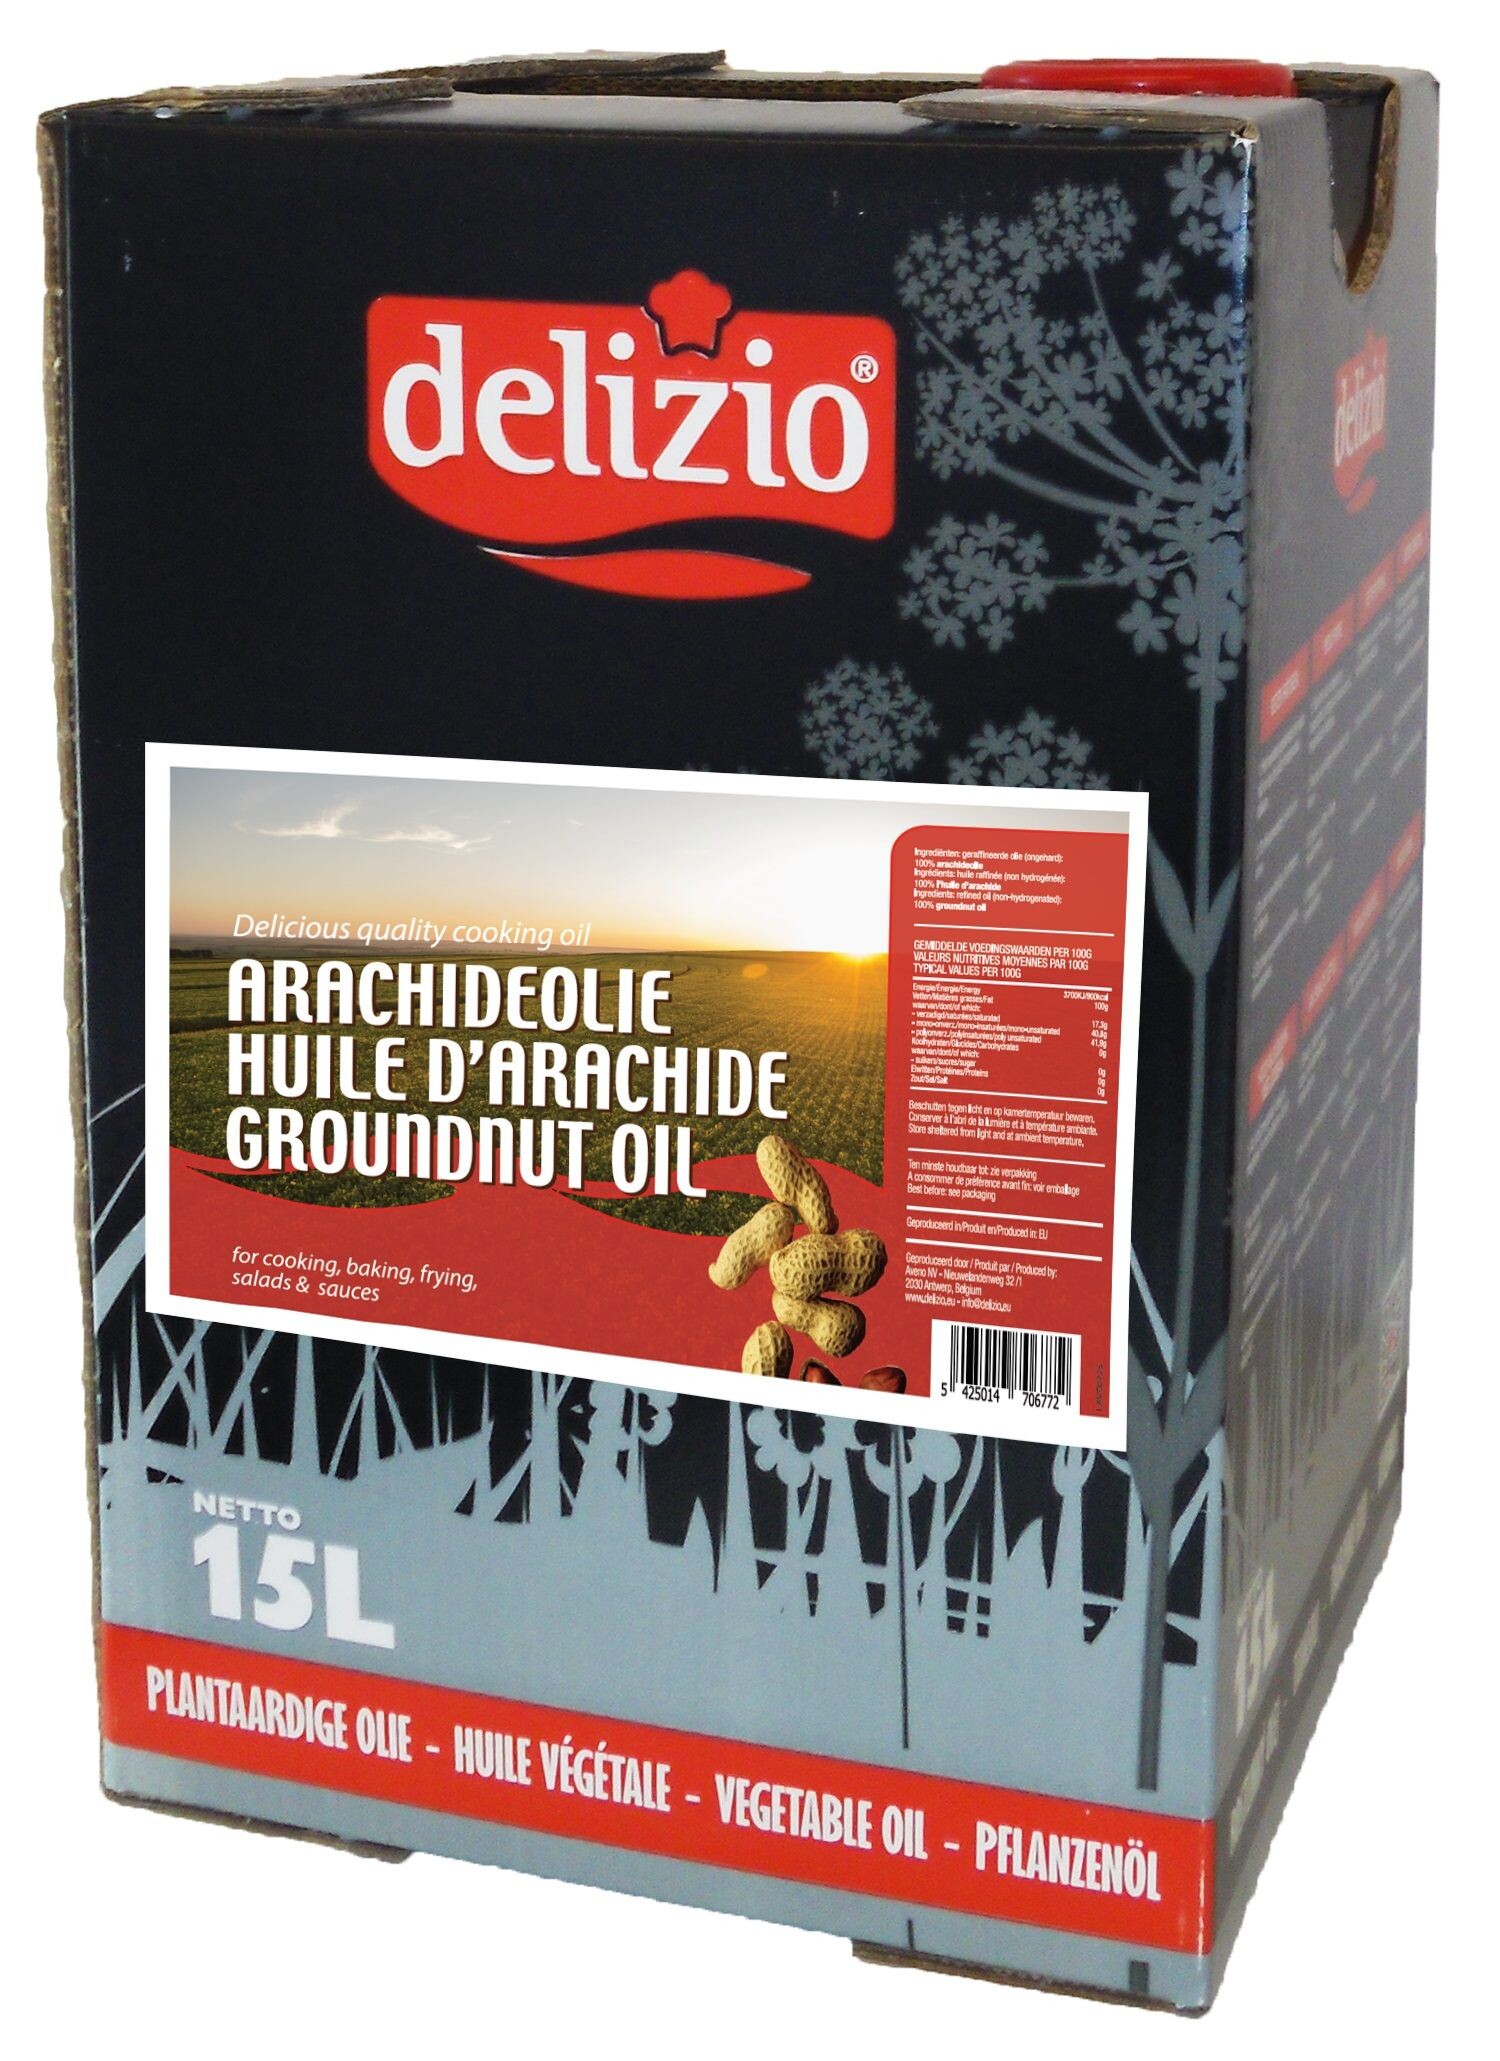 Delizio Groundnut oil 15L Can in Box